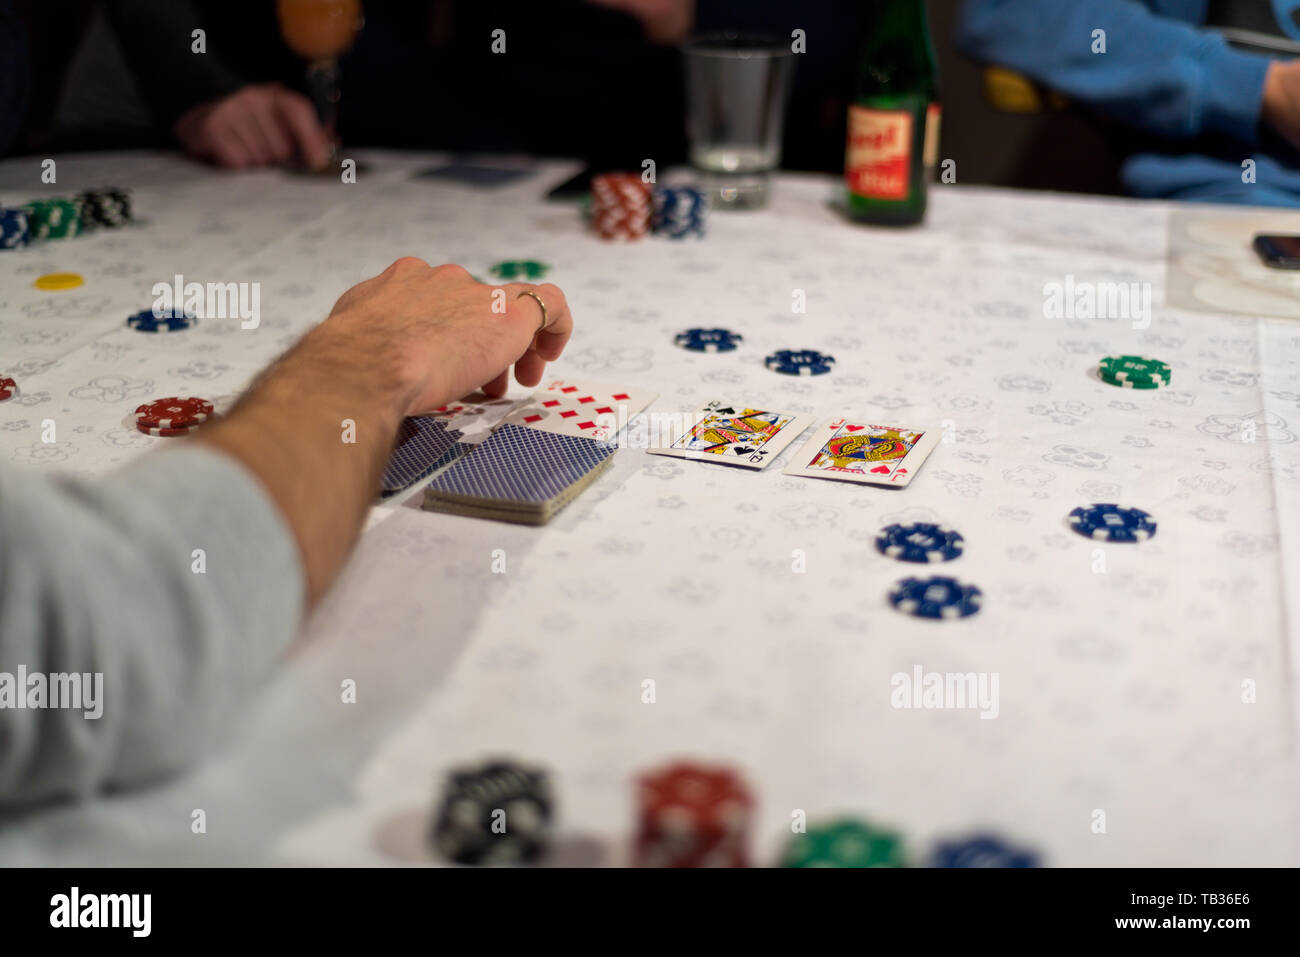 Le Texas hold'em poker, le croupier dévoile les cartes de la communauté après les paris ont été placés. Banque D'Images